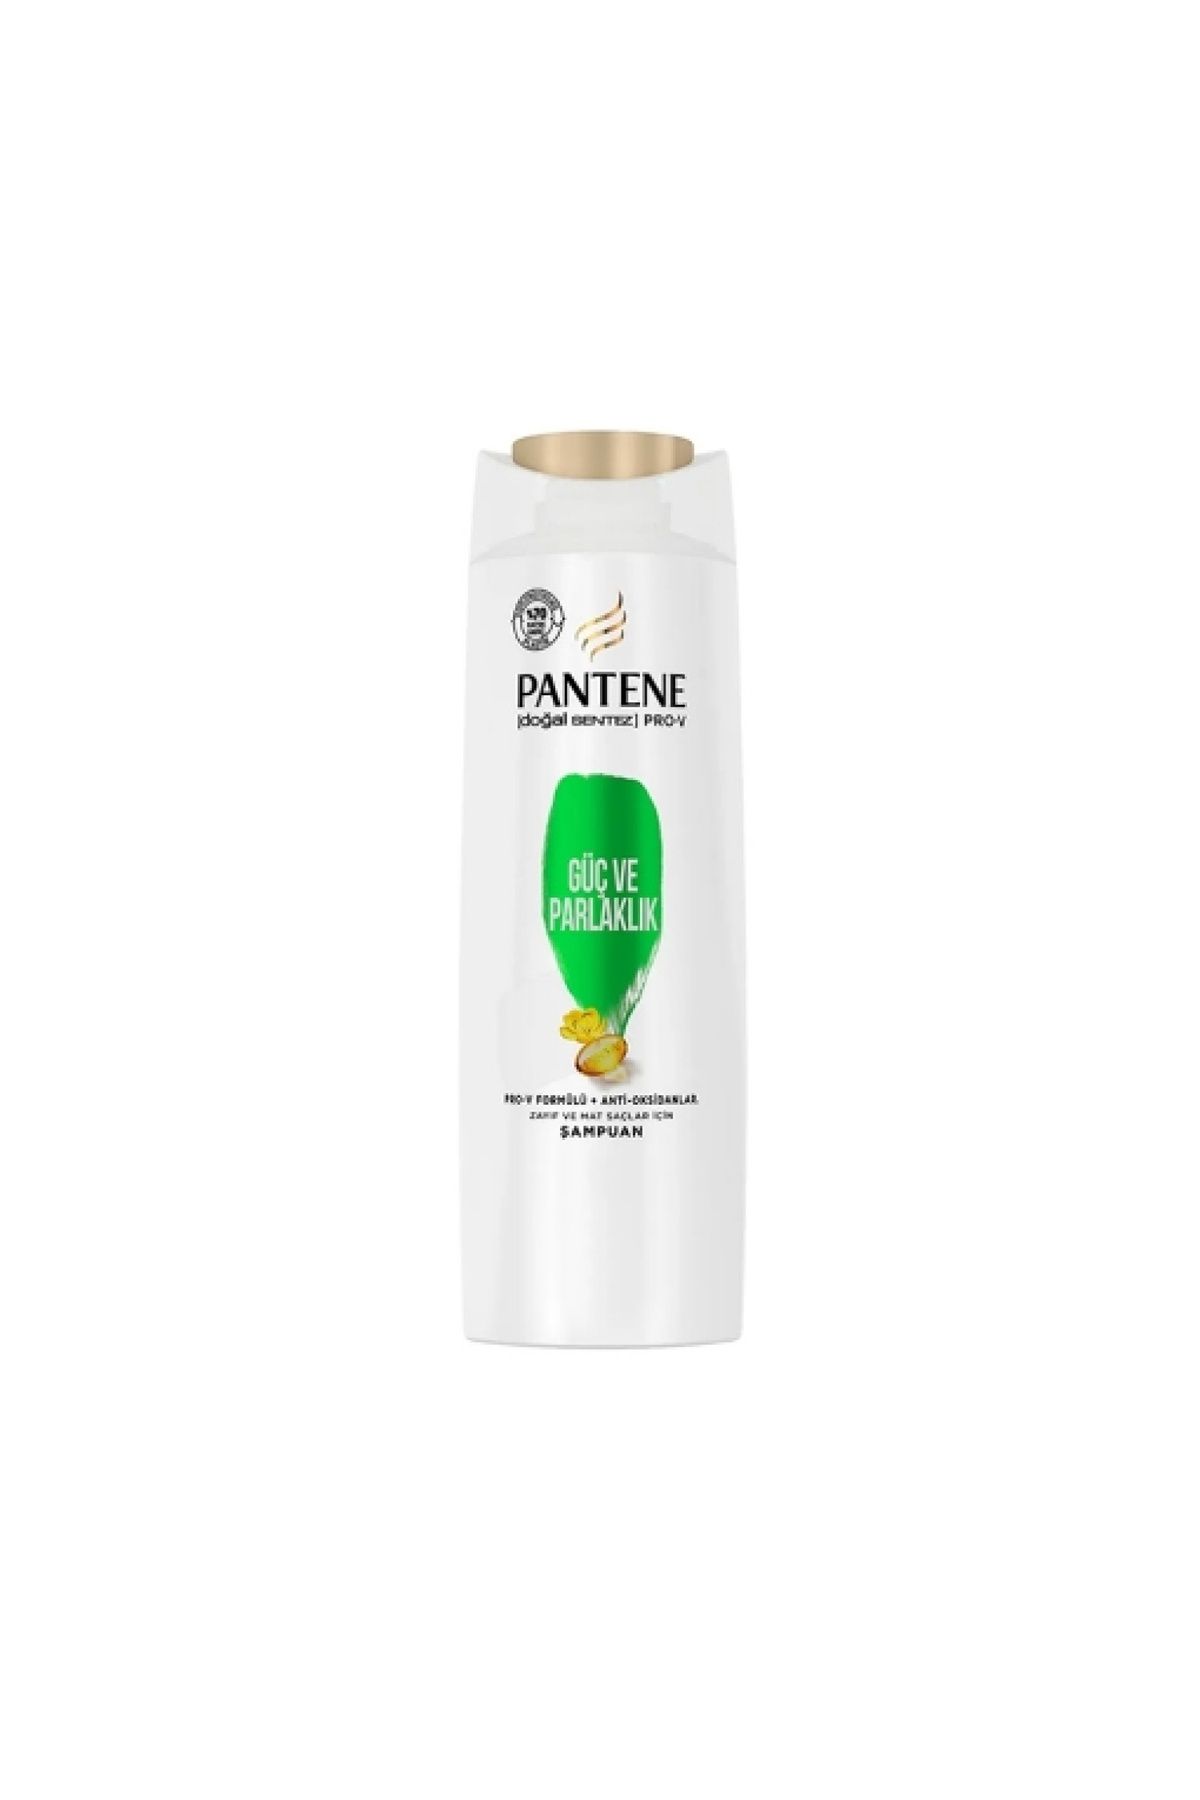 Pantene 2'li Pantene Şampuan 350 ml. Güçlü&Parlaklık